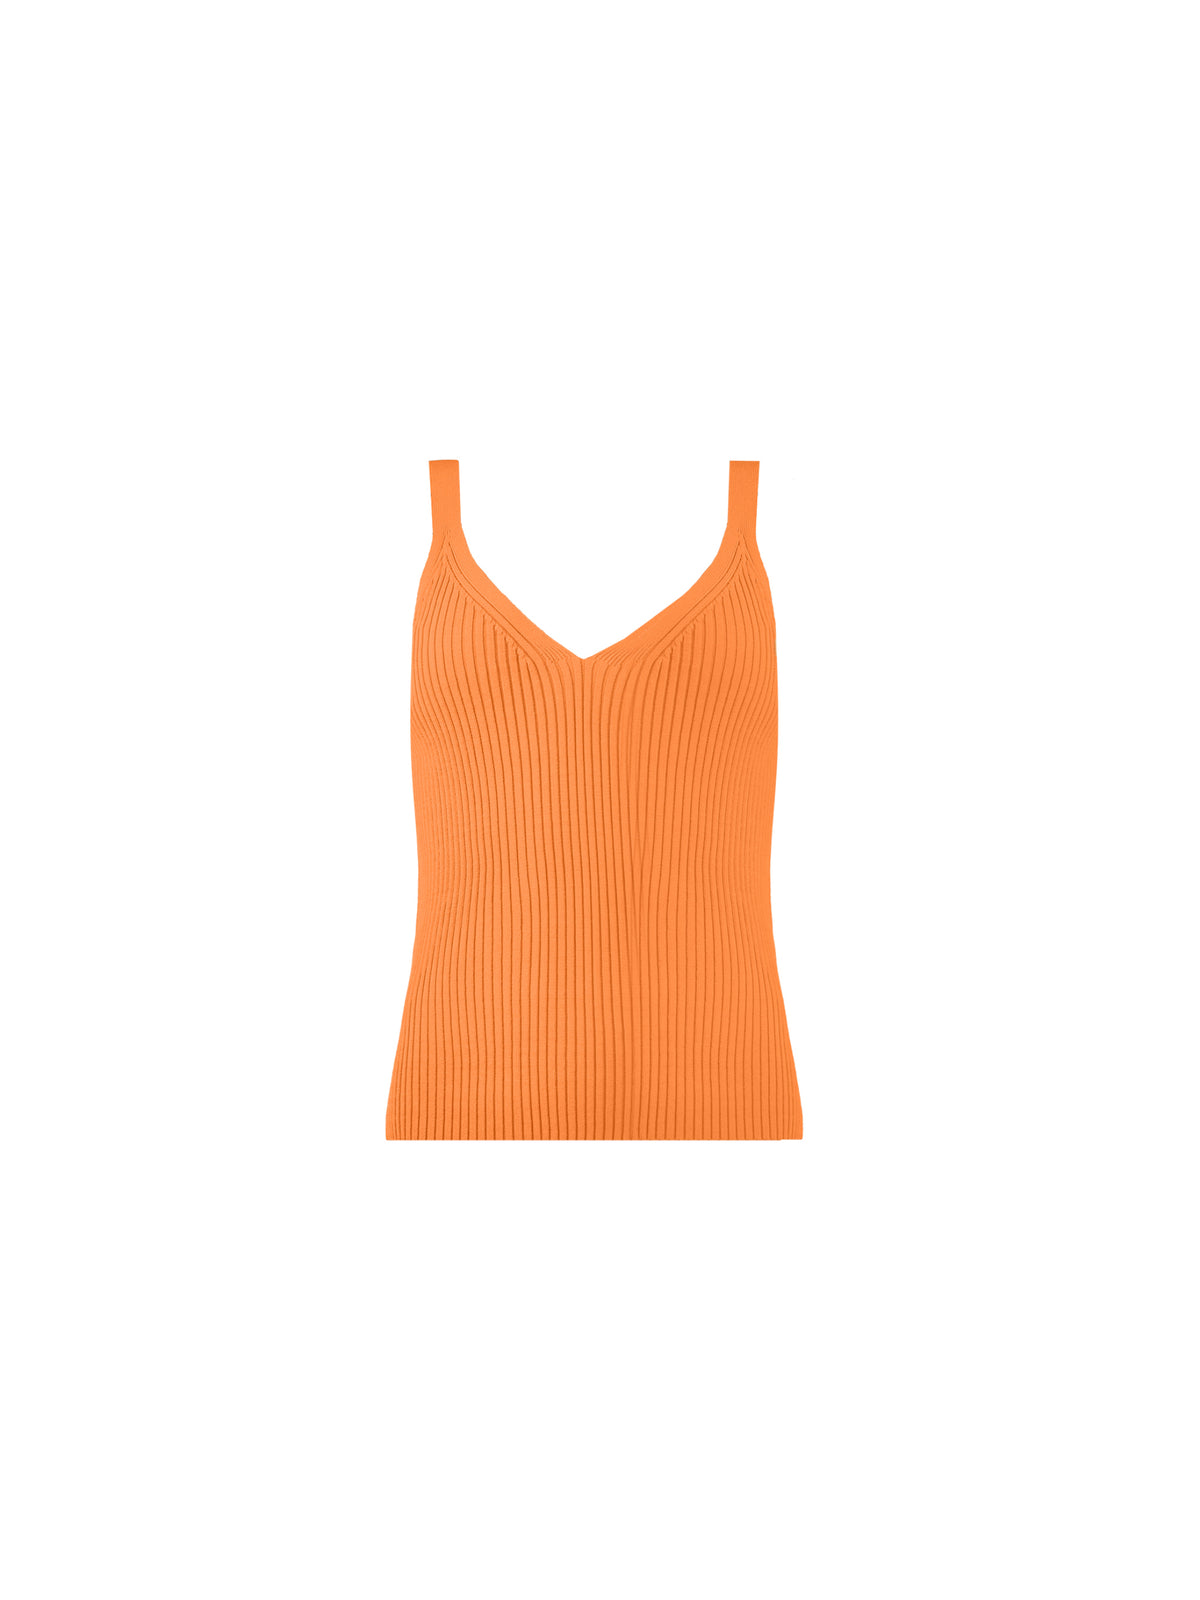 Orange Ribbed Knit Vest Top